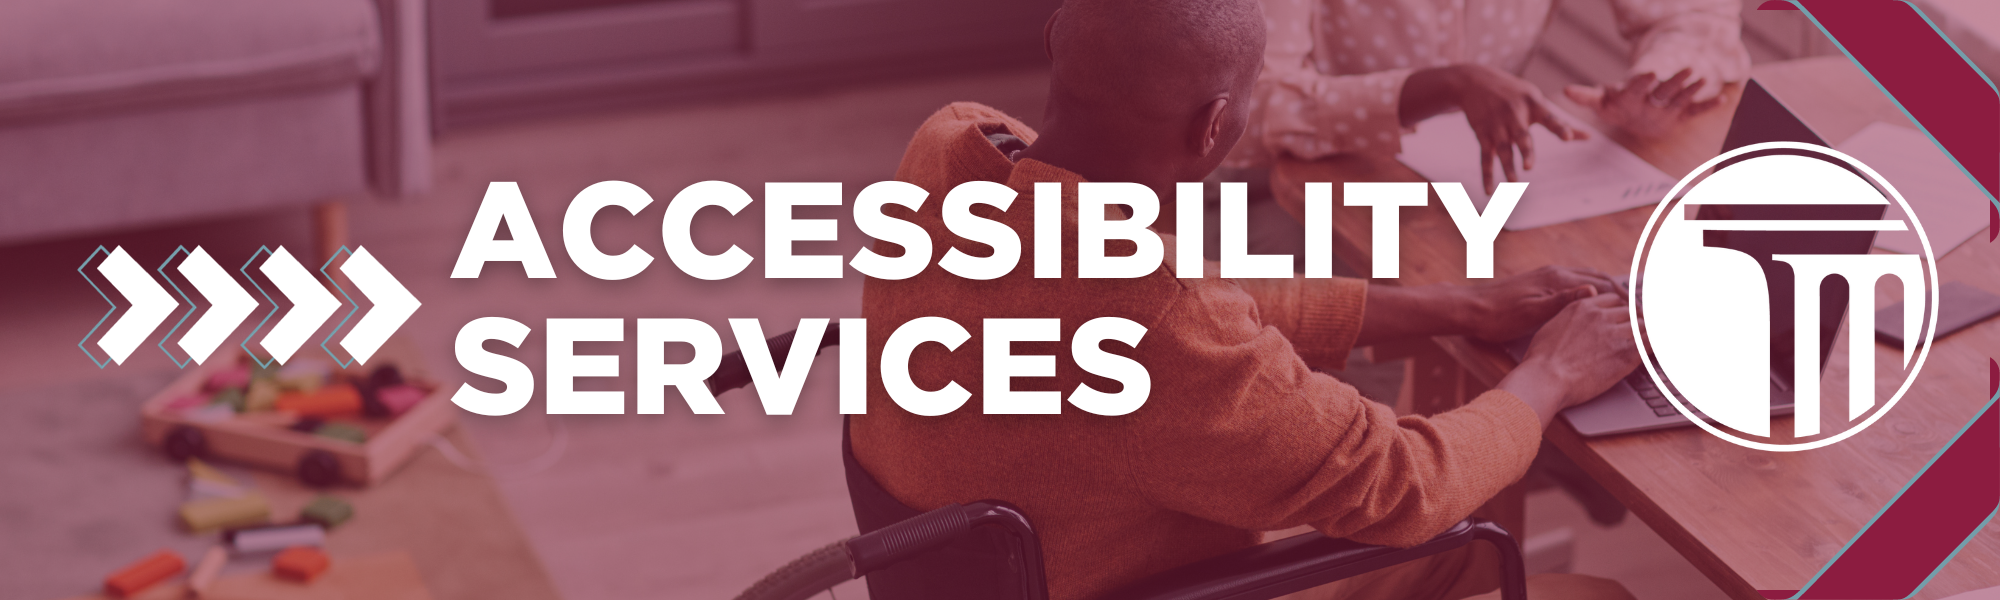 Banner na may nakasulat na "Accessibility Services".